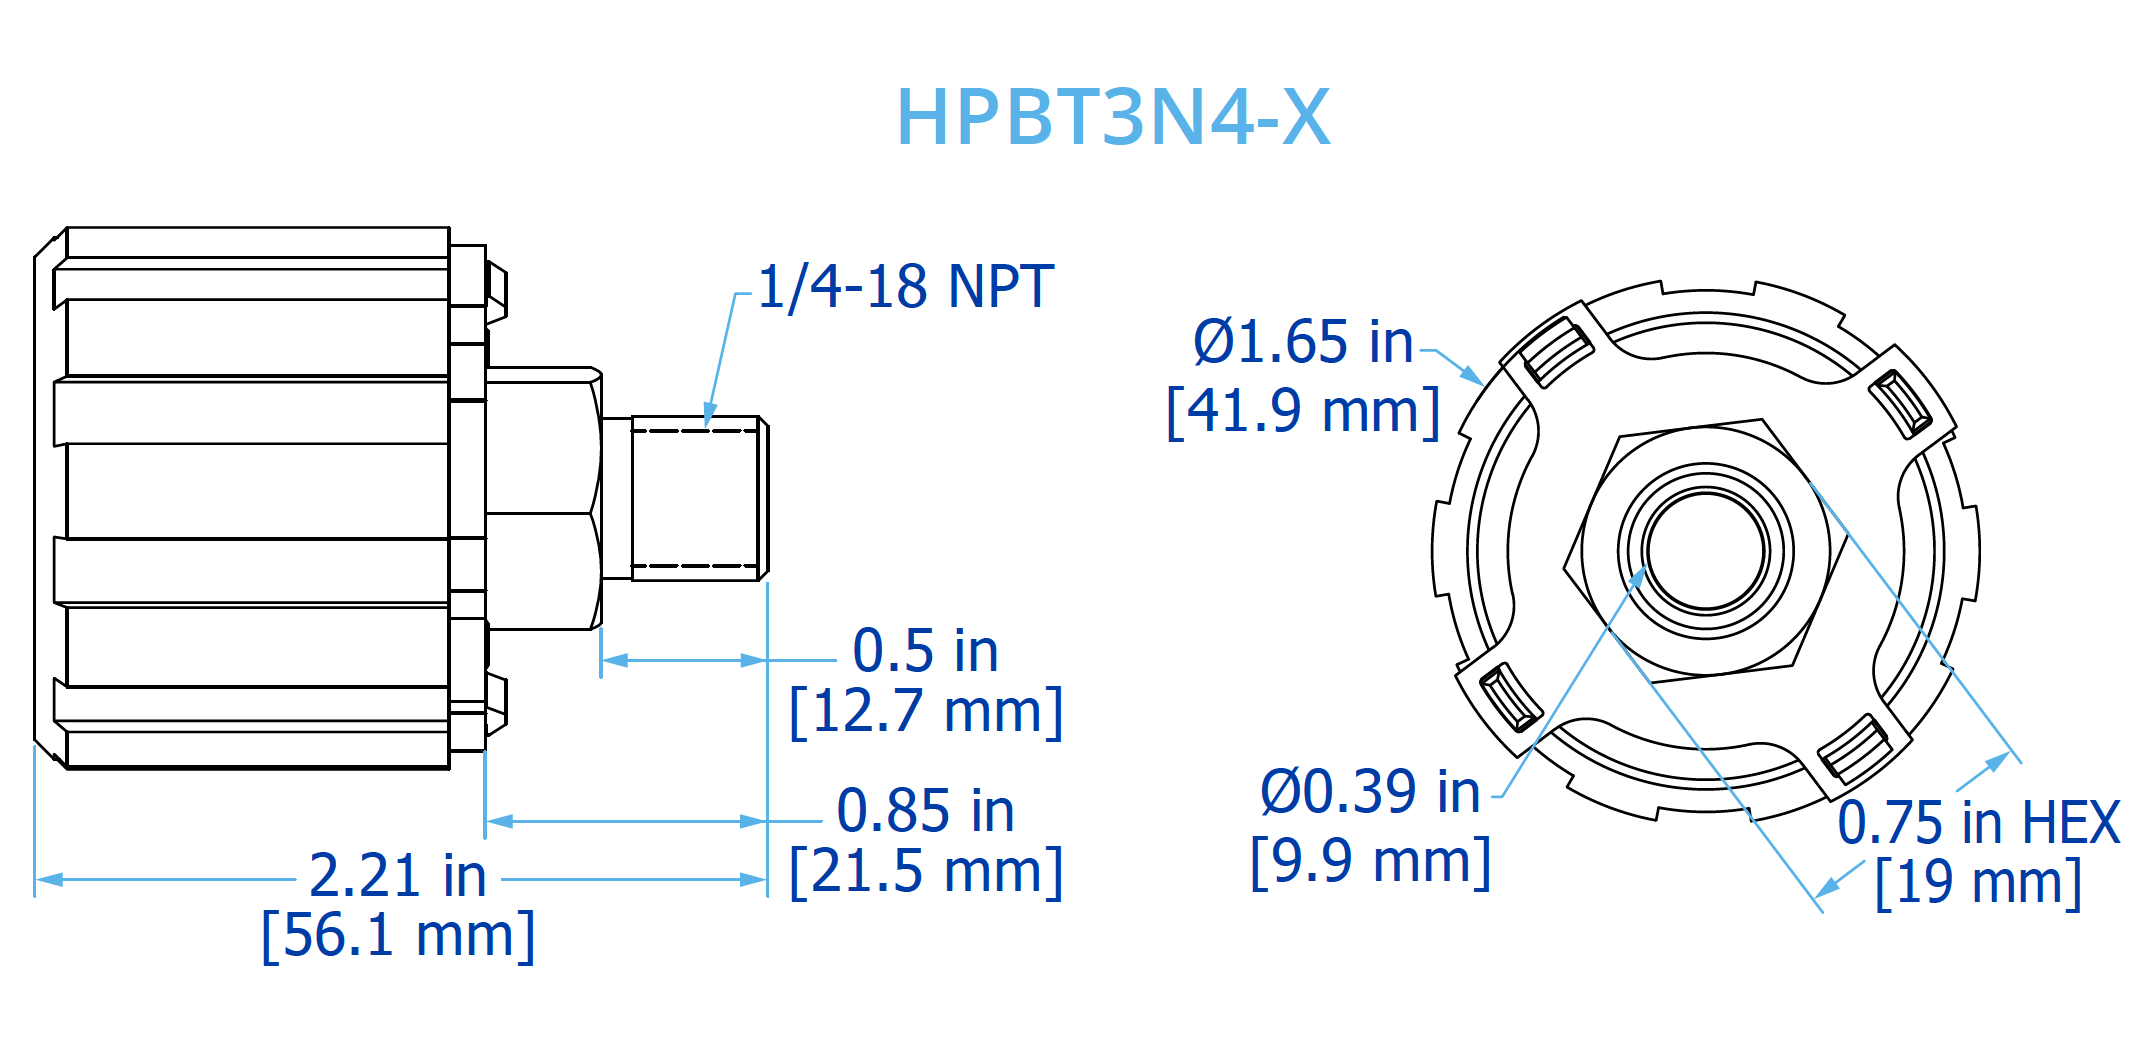 HPBT3N4-X